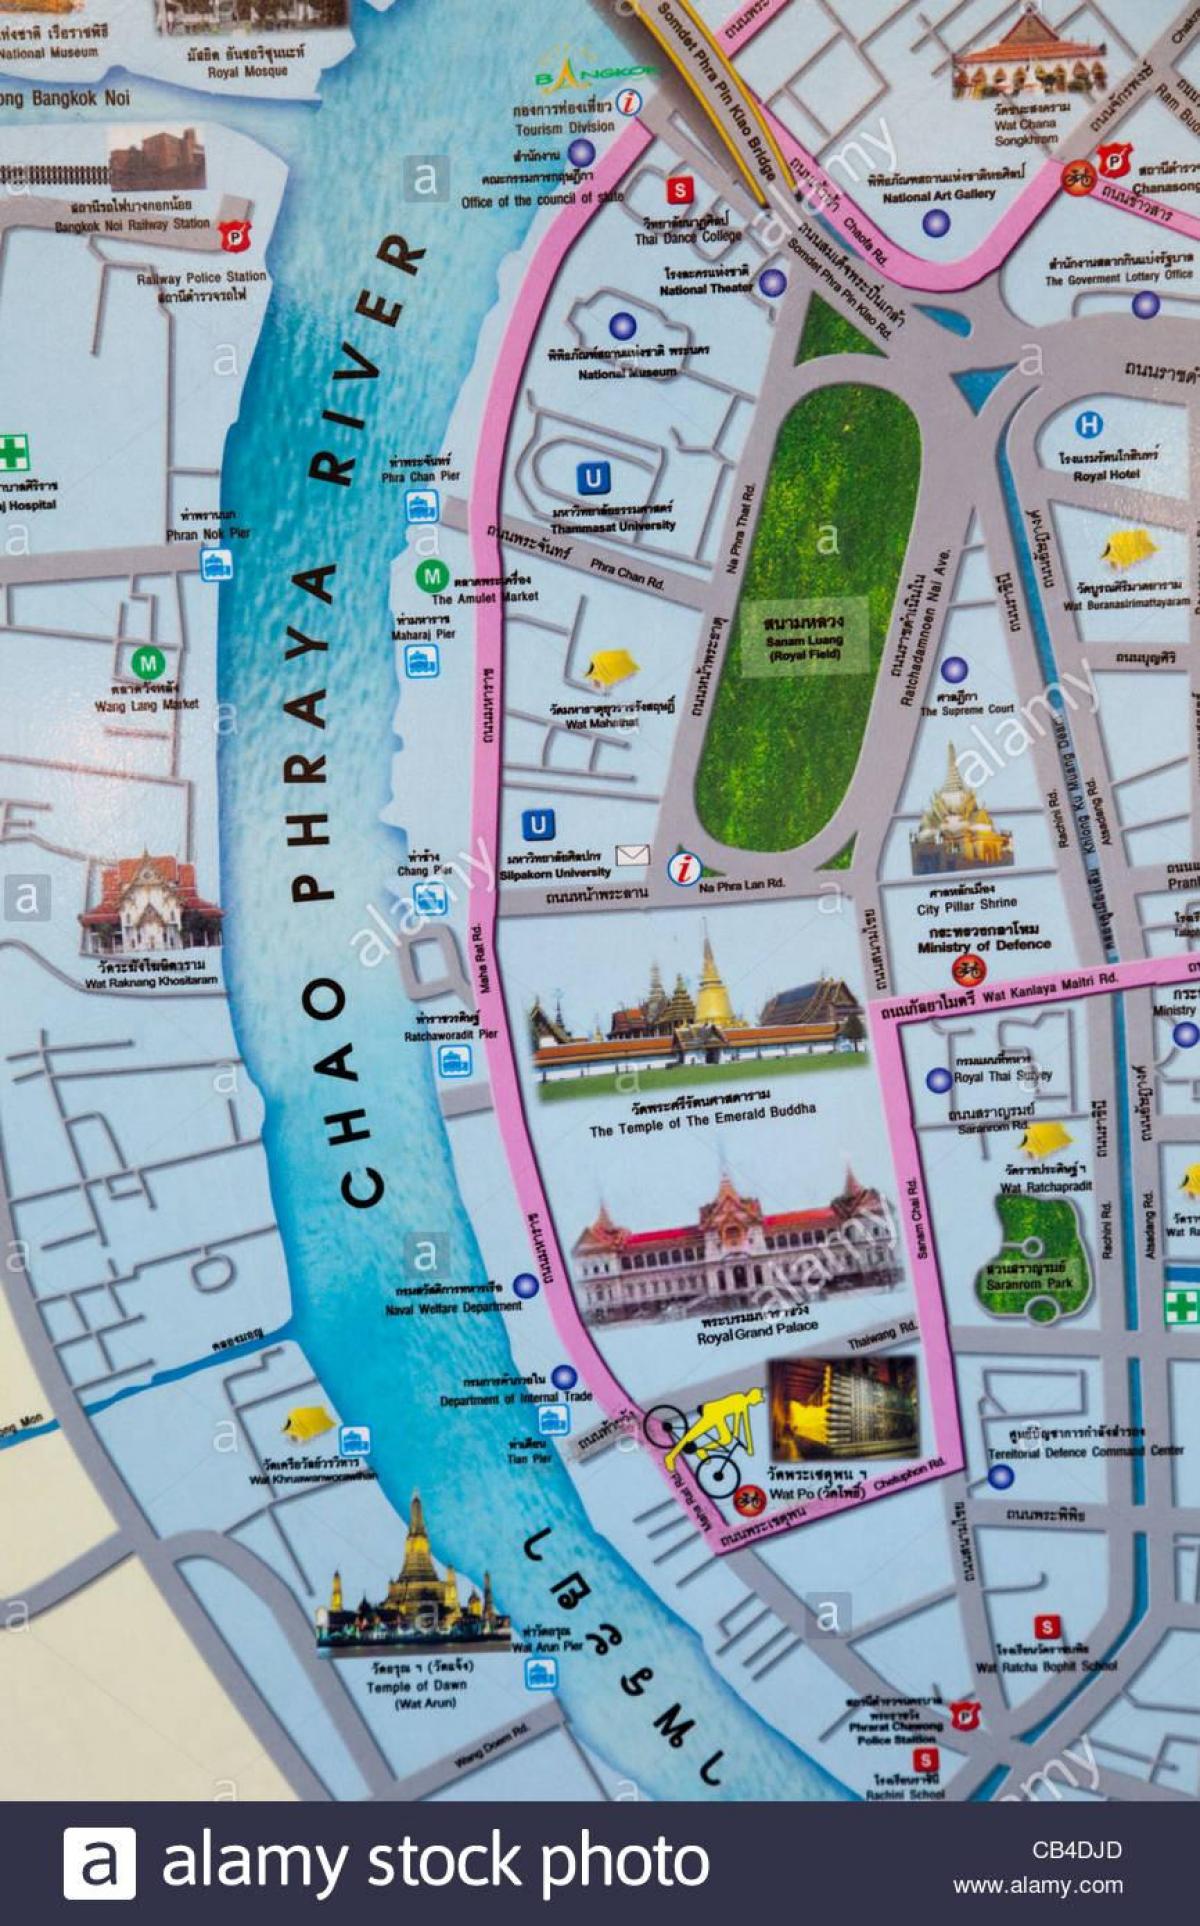 бангкок мапата со туристички места